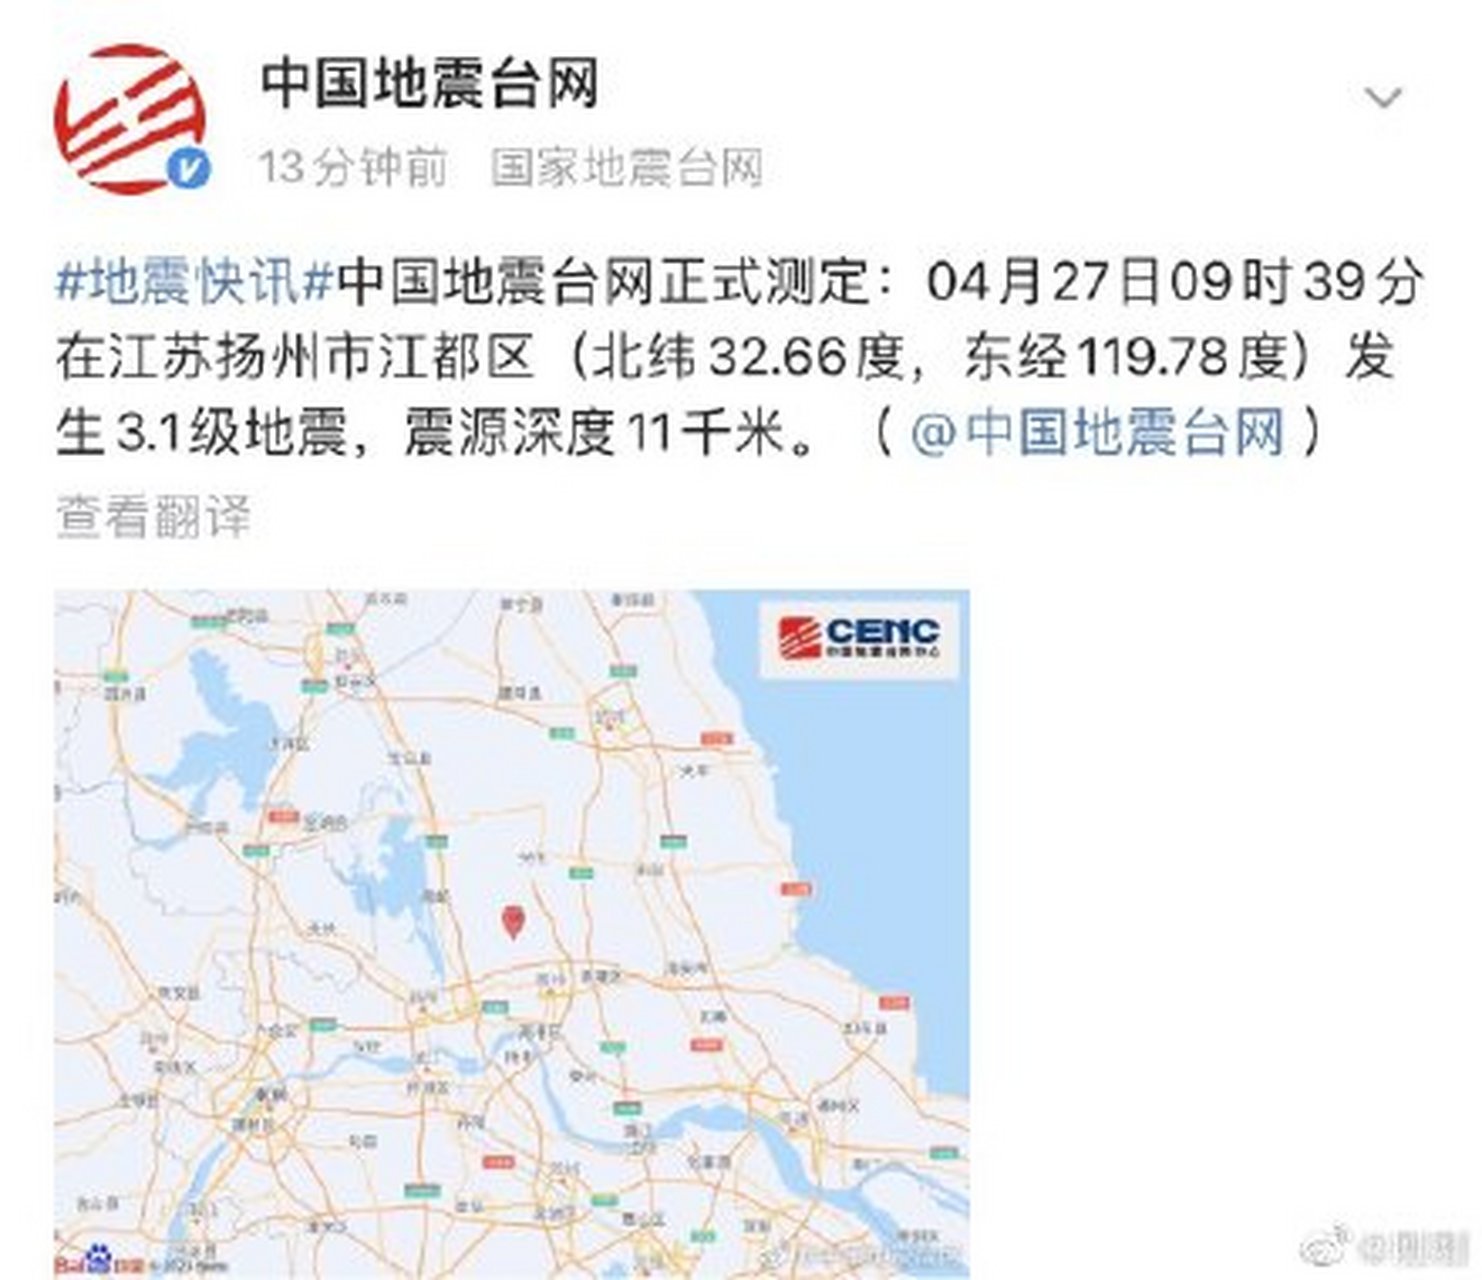 突发,扬州发生31级地震,震源深度11千米